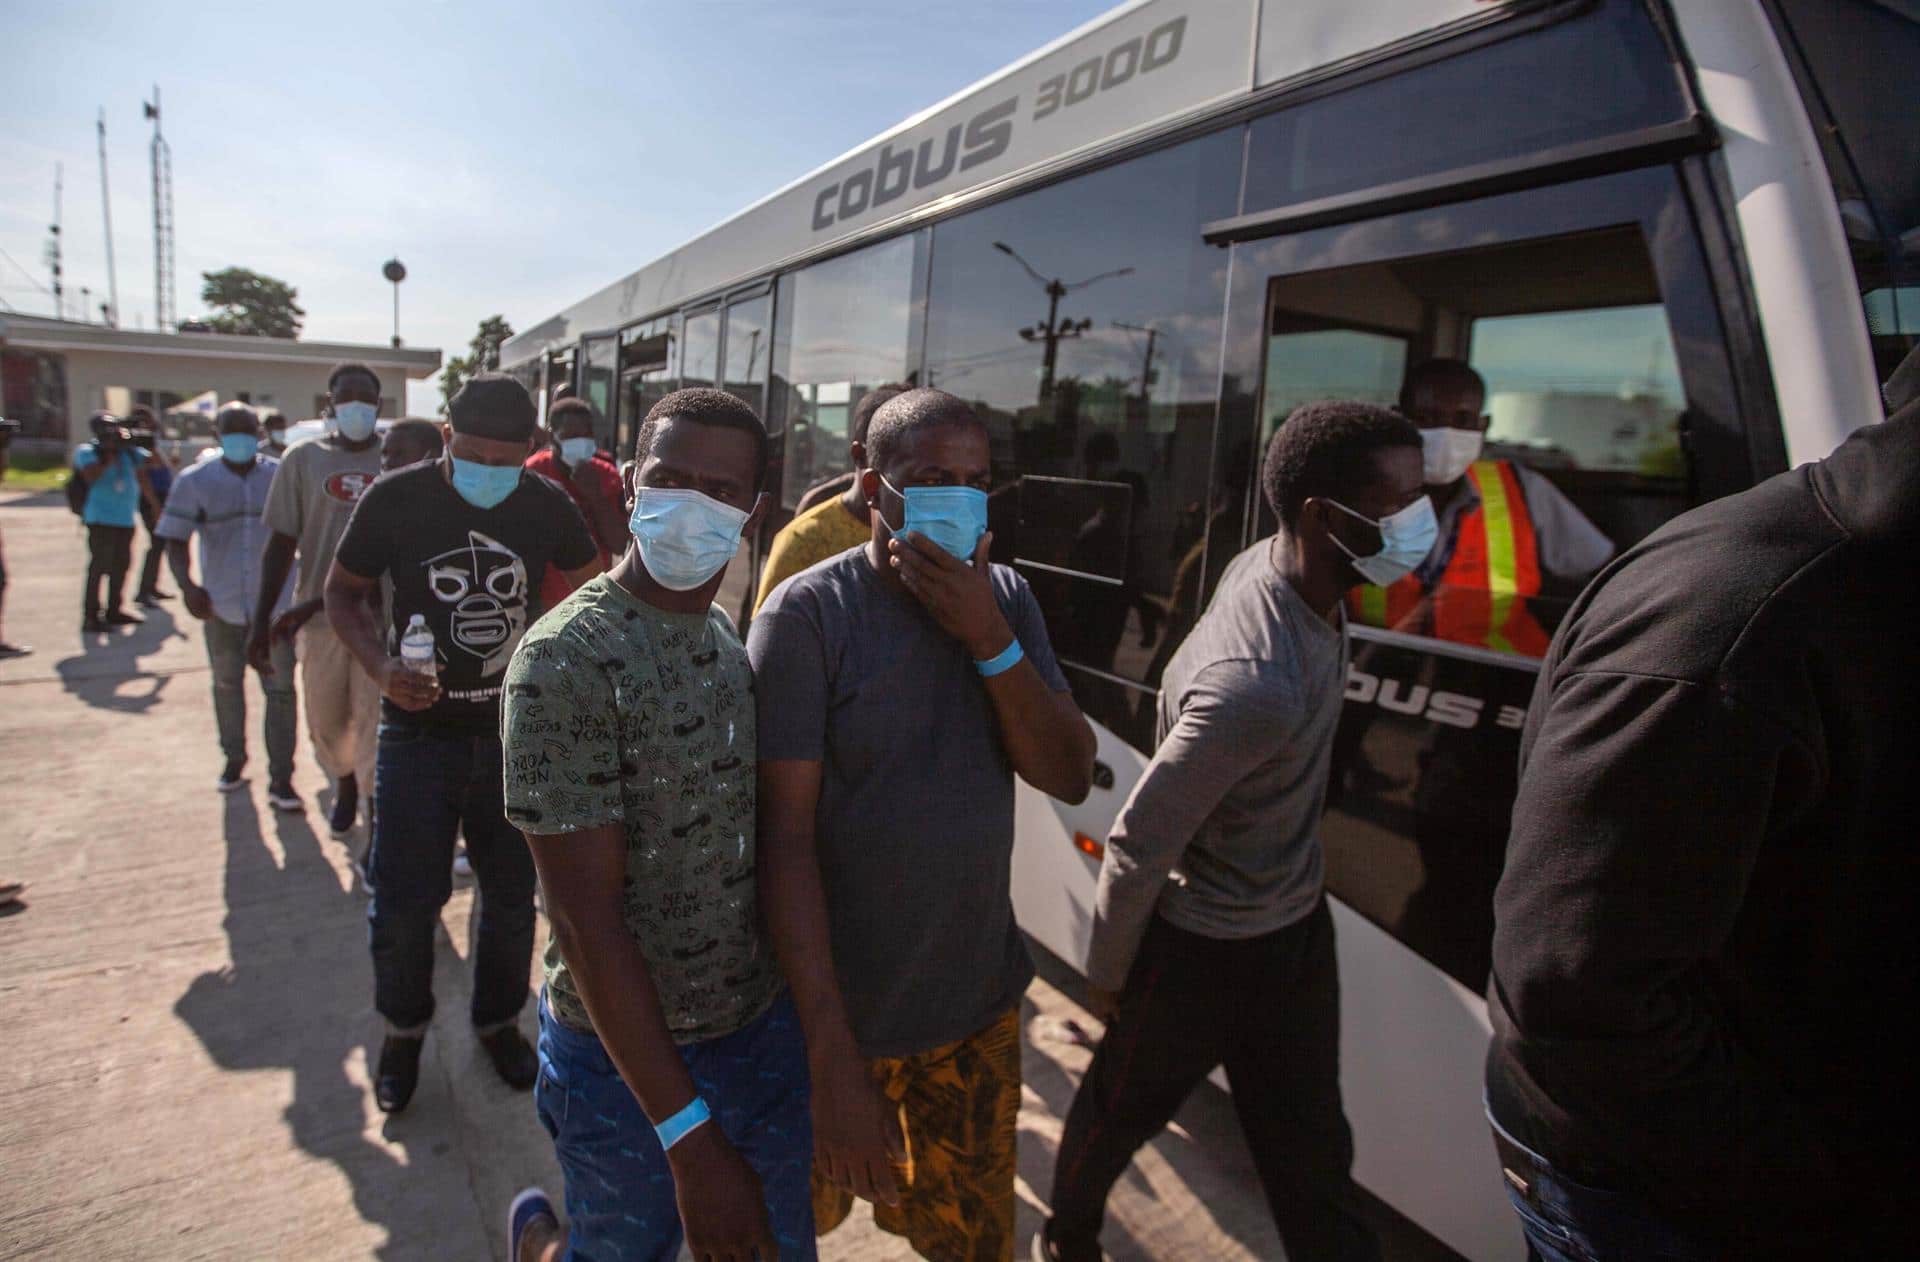 Llega a Haití un nuevo vuelo con 53 deportados desde EEUU